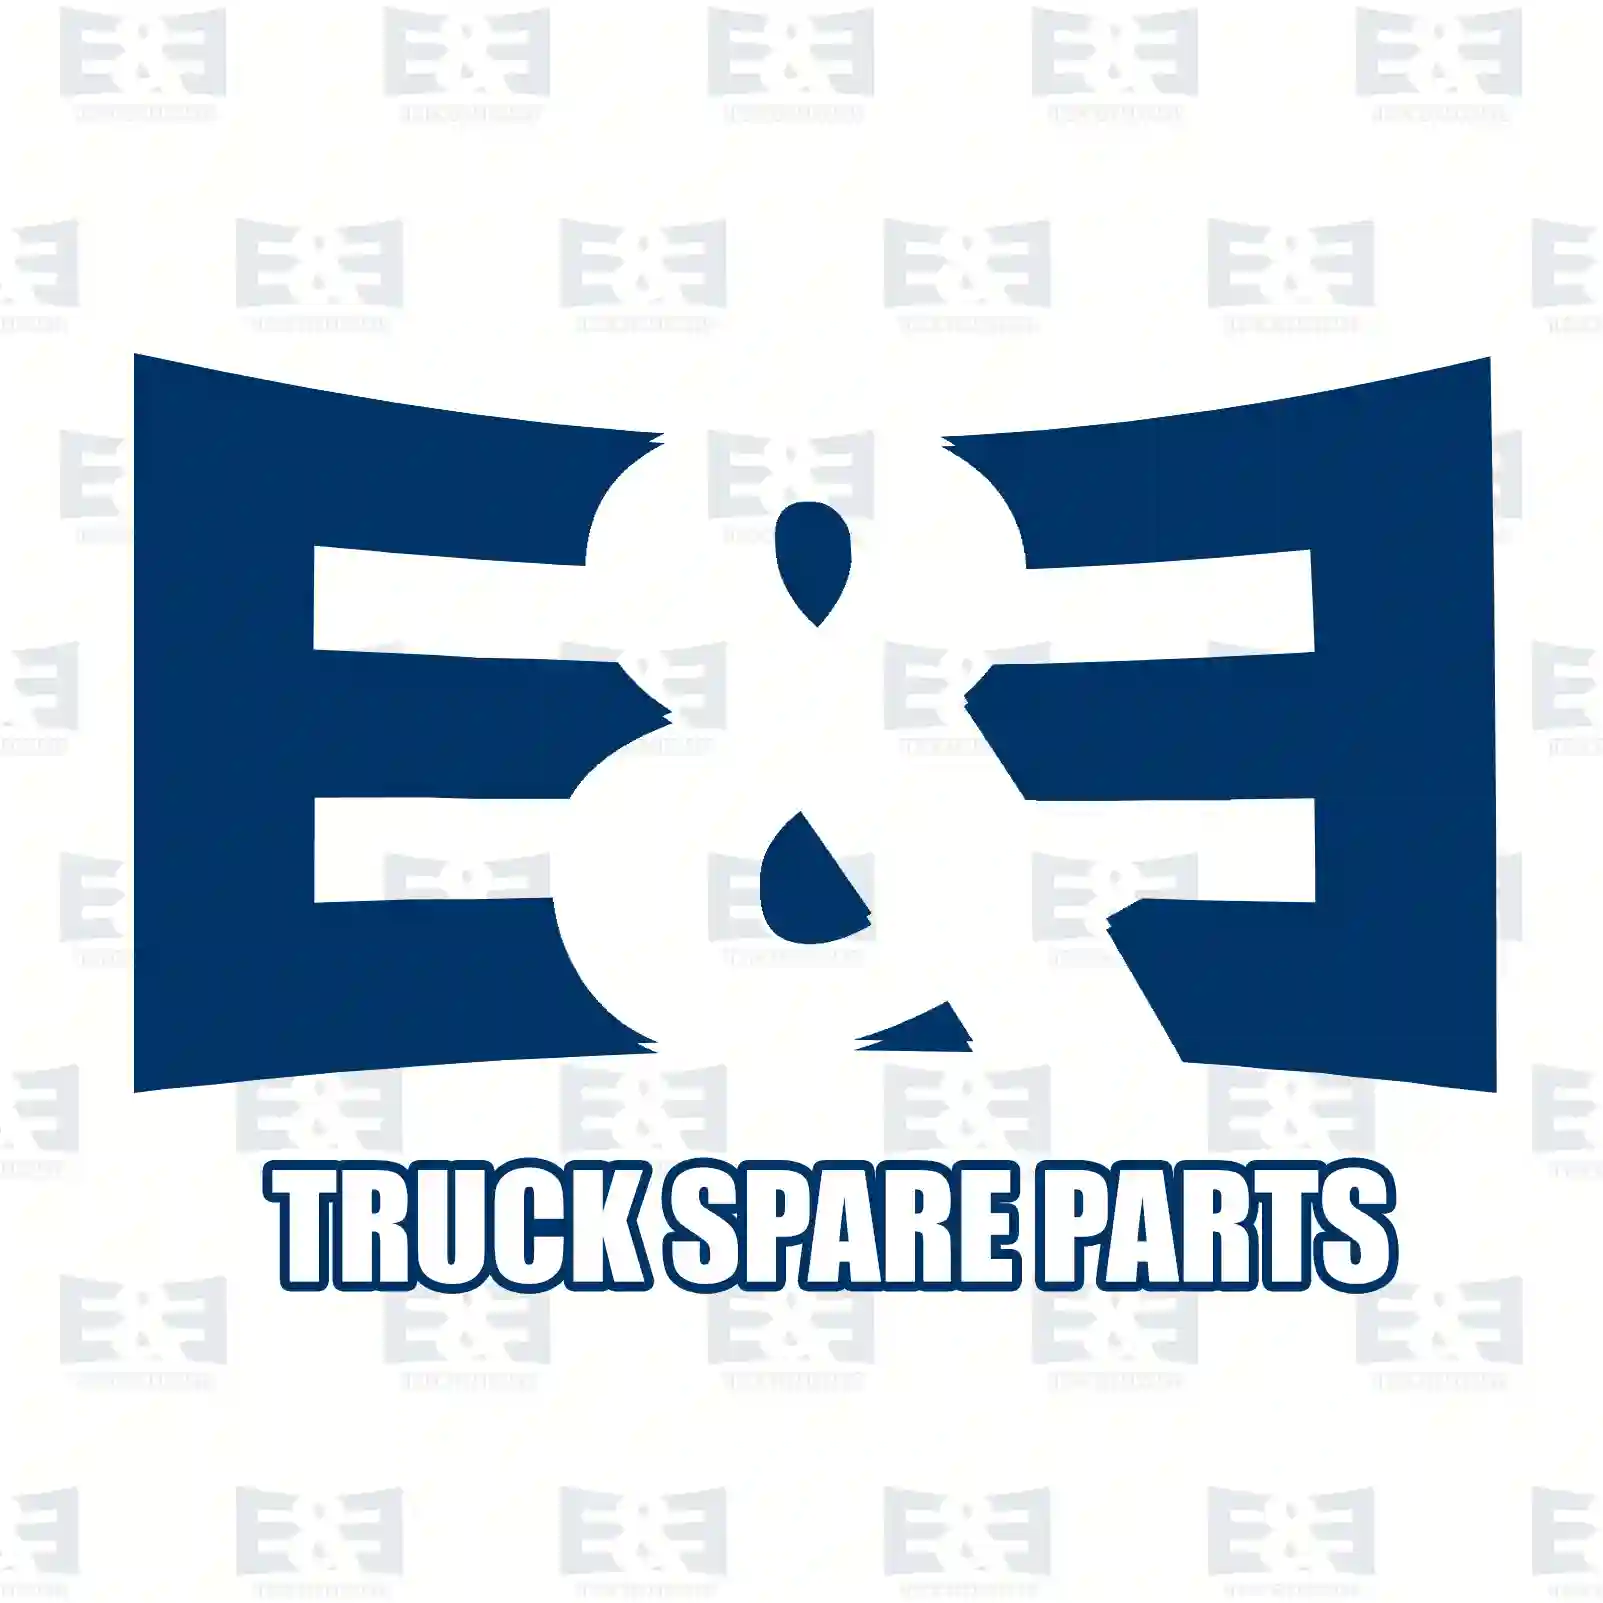 NOx Sensor, 2E2290172, 1932603, 1936258, 1973527, 2006245, 2236408 ||  2E2290172 E&E Truck Spare Parts | Truck Spare Parts, Auotomotive Spare Parts NOx Sensor, 2E2290172, 1932603, 1936258, 1973527, 2006245, 2236408 ||  2E2290172 E&E Truck Spare Parts | Truck Spare Parts, Auotomotive Spare Parts